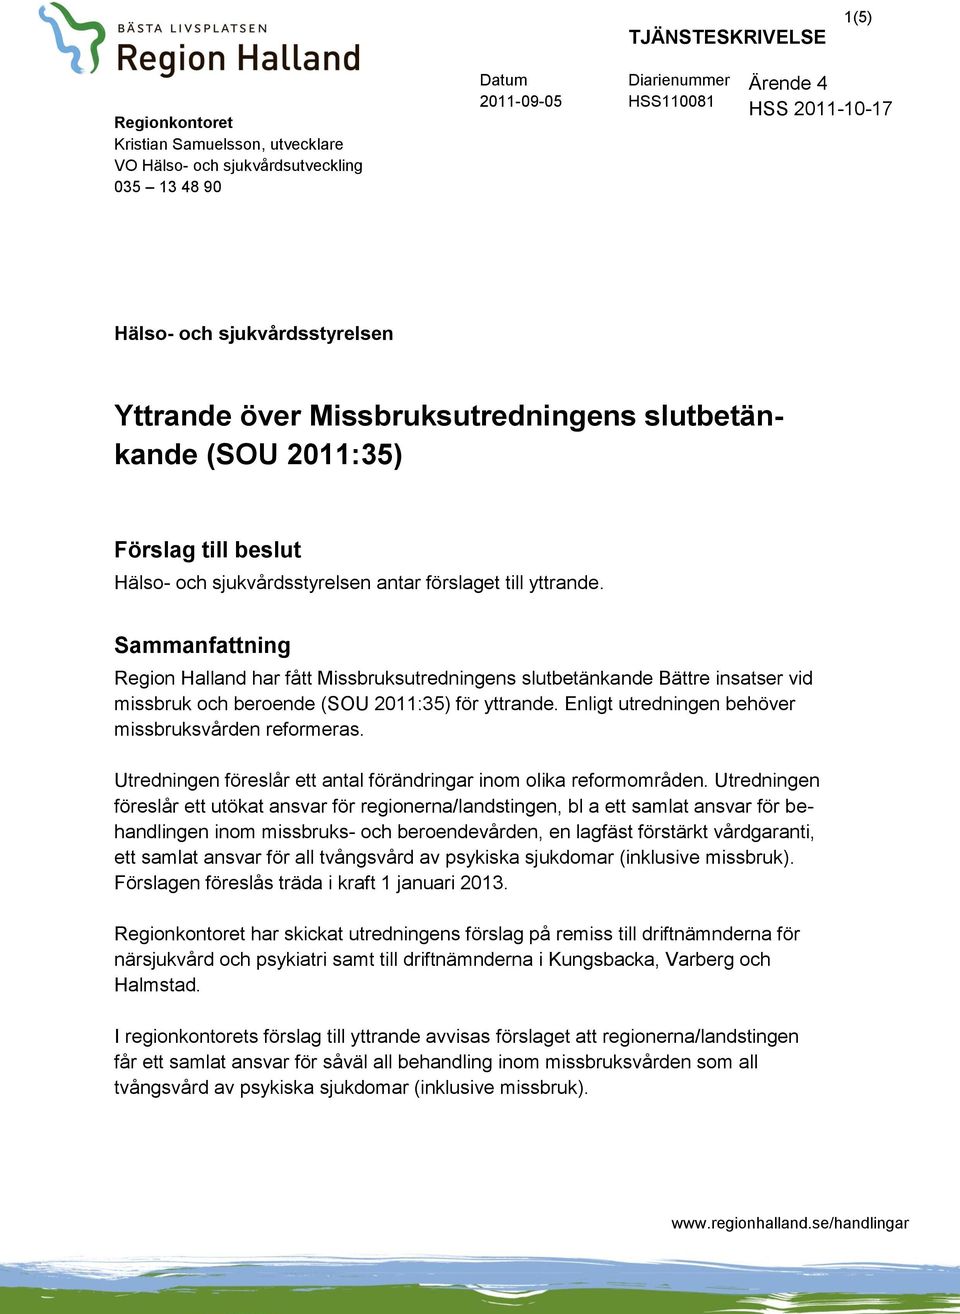 Sammanfattning Region Halland har fått Missbruksutredningens slutbetänkande Bättre insatser vid missbruk och beroende (SOU 2011:35) för yttrande. Enligt utredningen behöver missbruksvården reformeras.